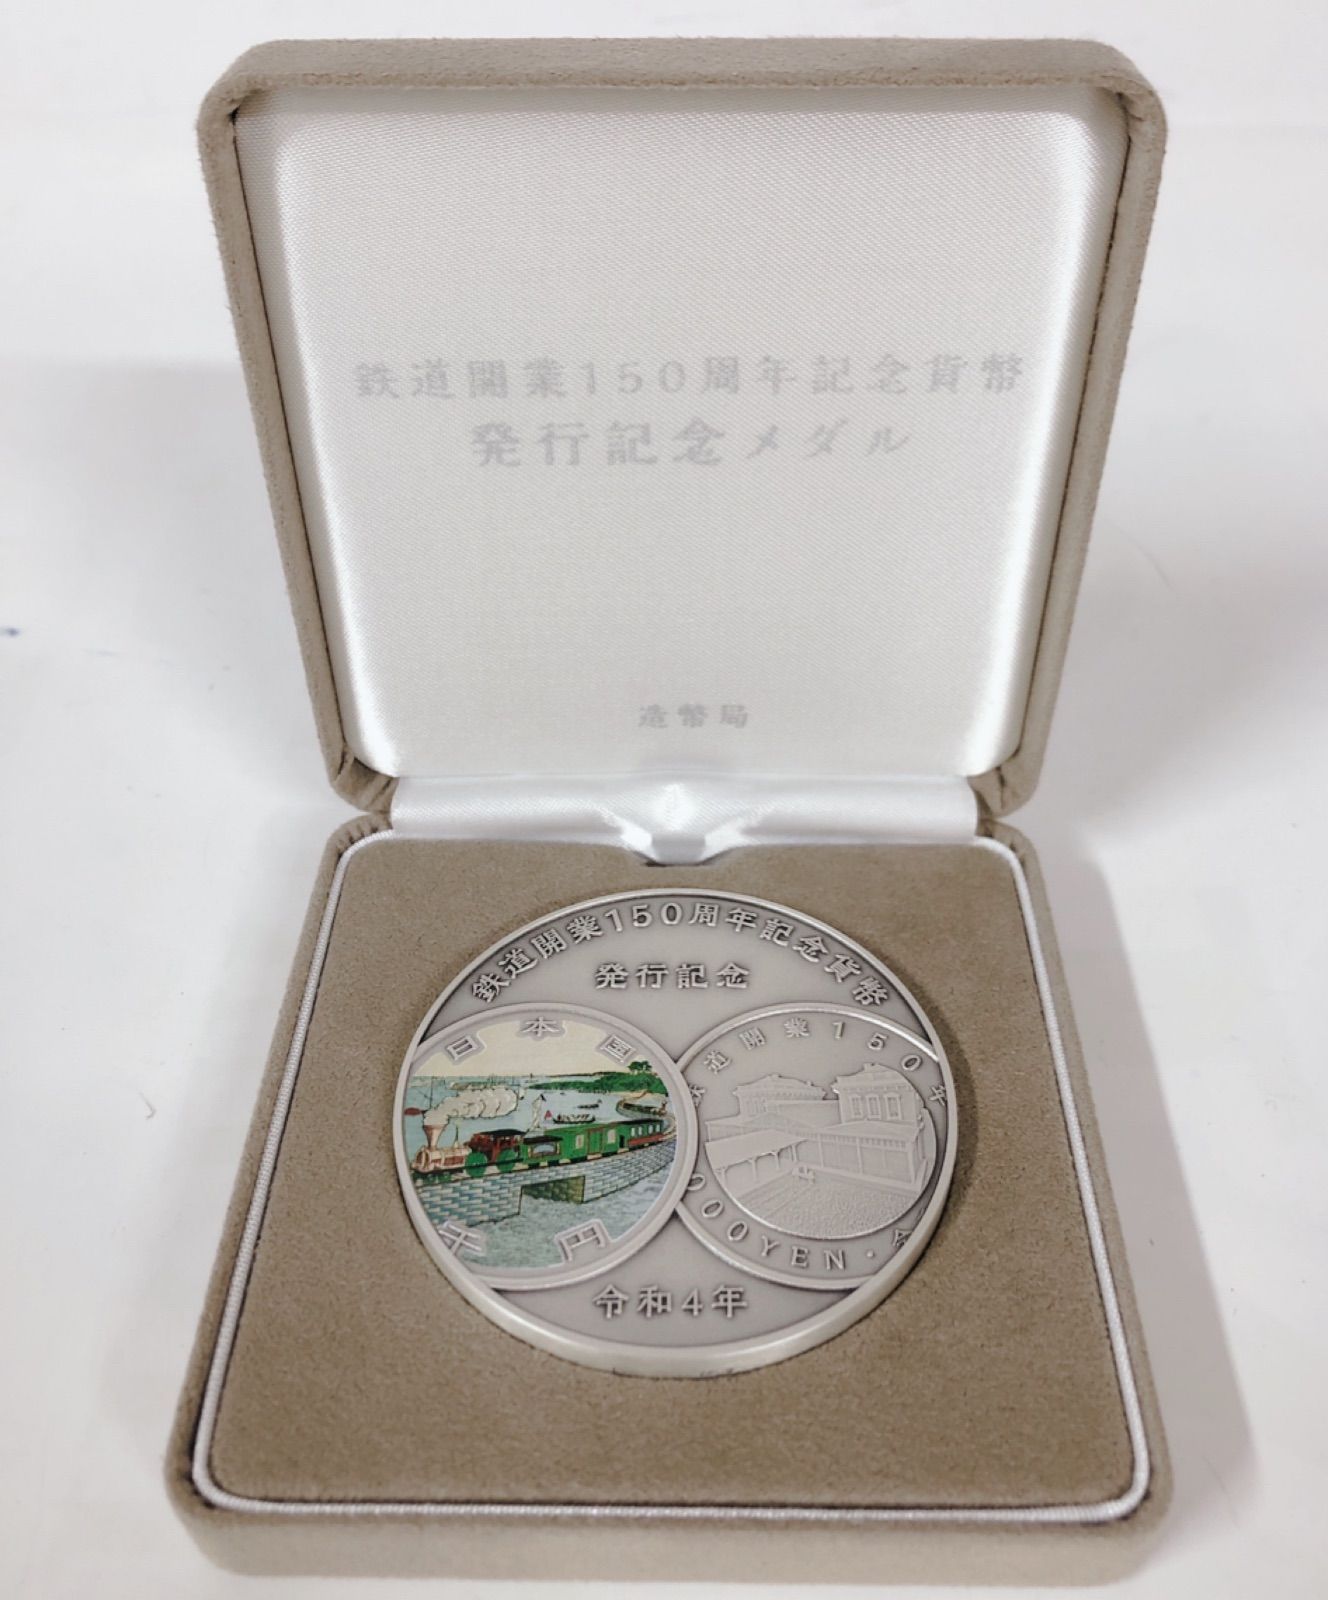 純銀 郵便制度150周年記念貨幣発行記念メダル - ノベルティグッズ